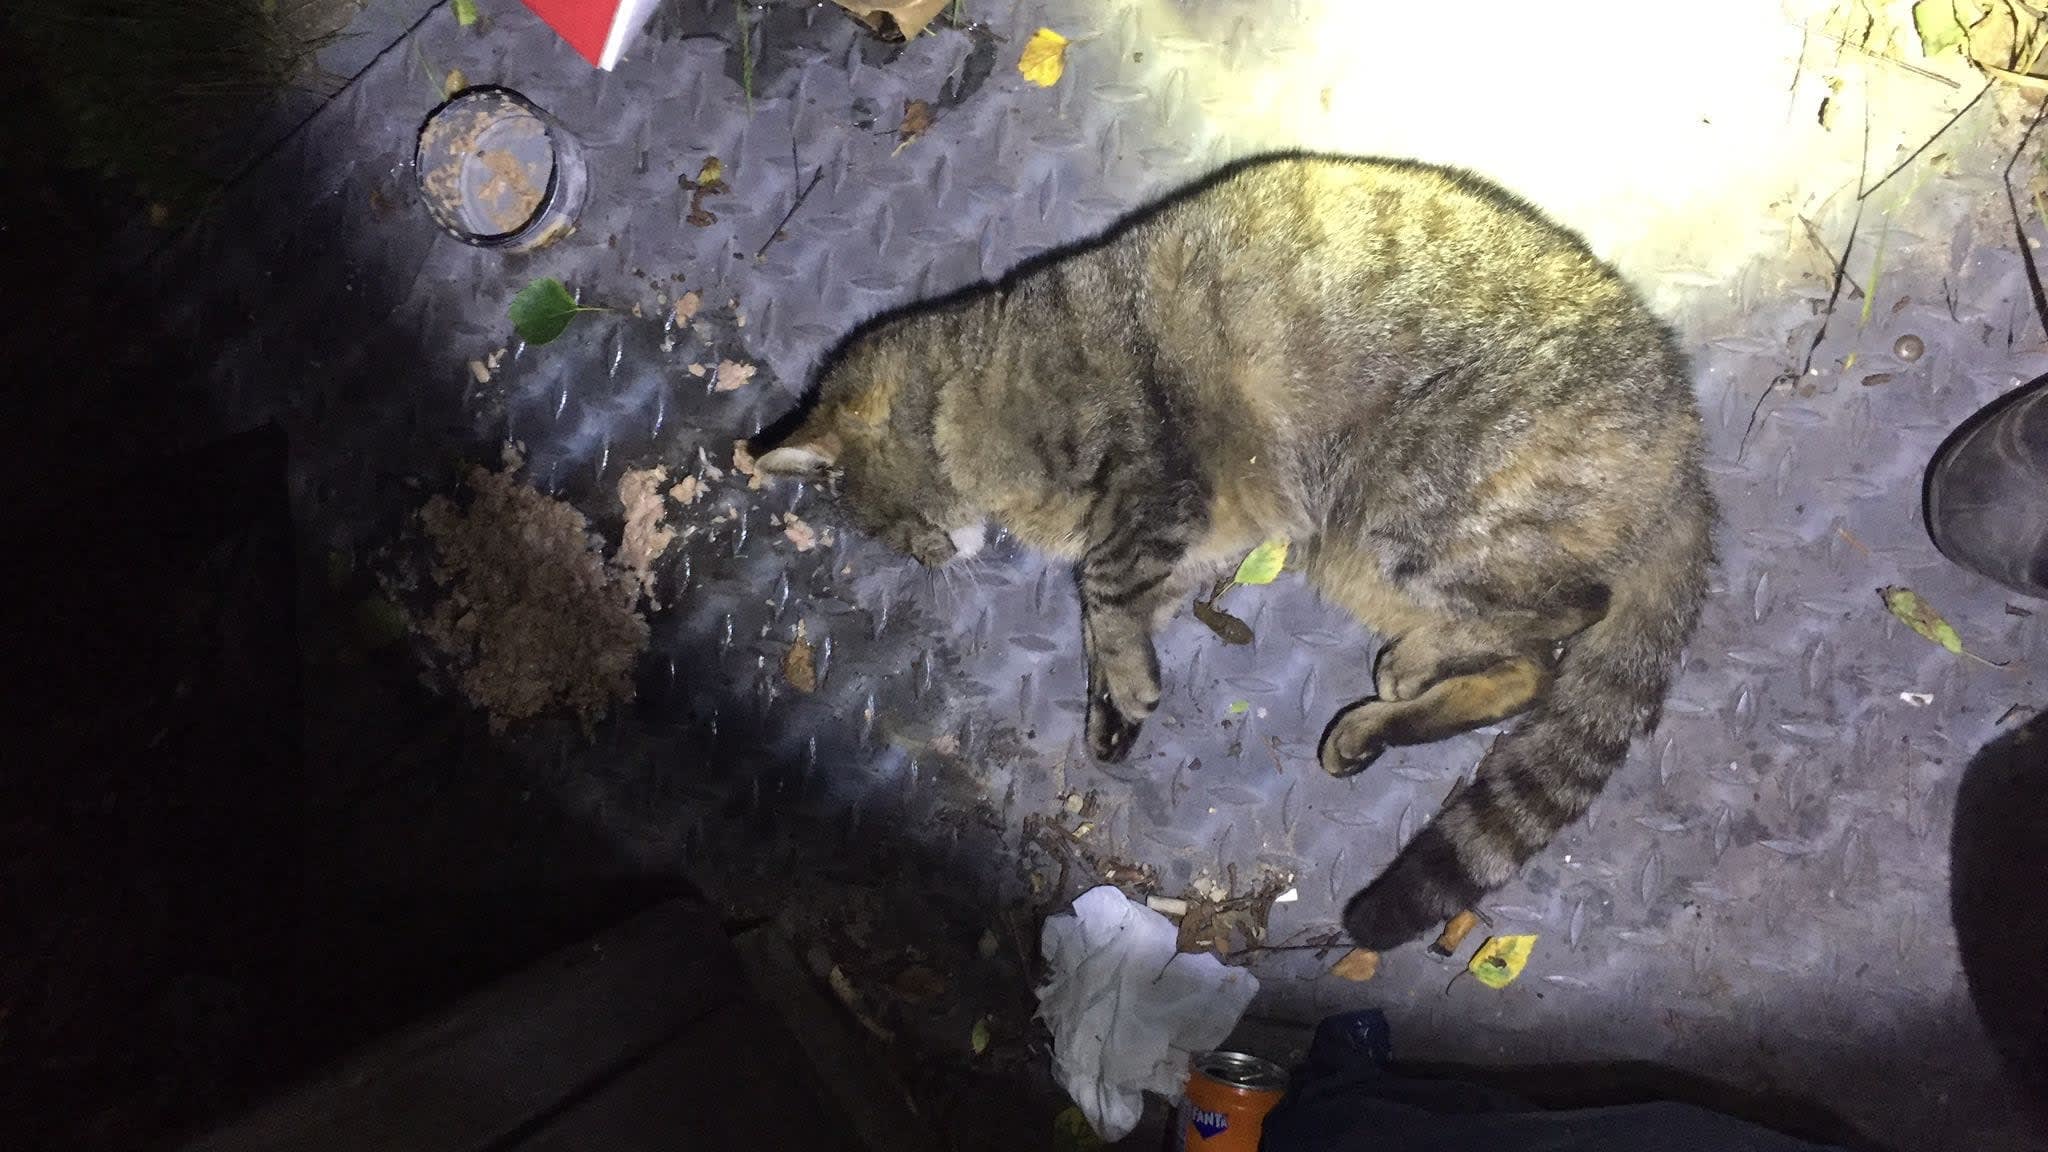 Stuiptrekkende kat gevonden tussen het afval, waarschijnlijk vergiftigd: 'Triest'